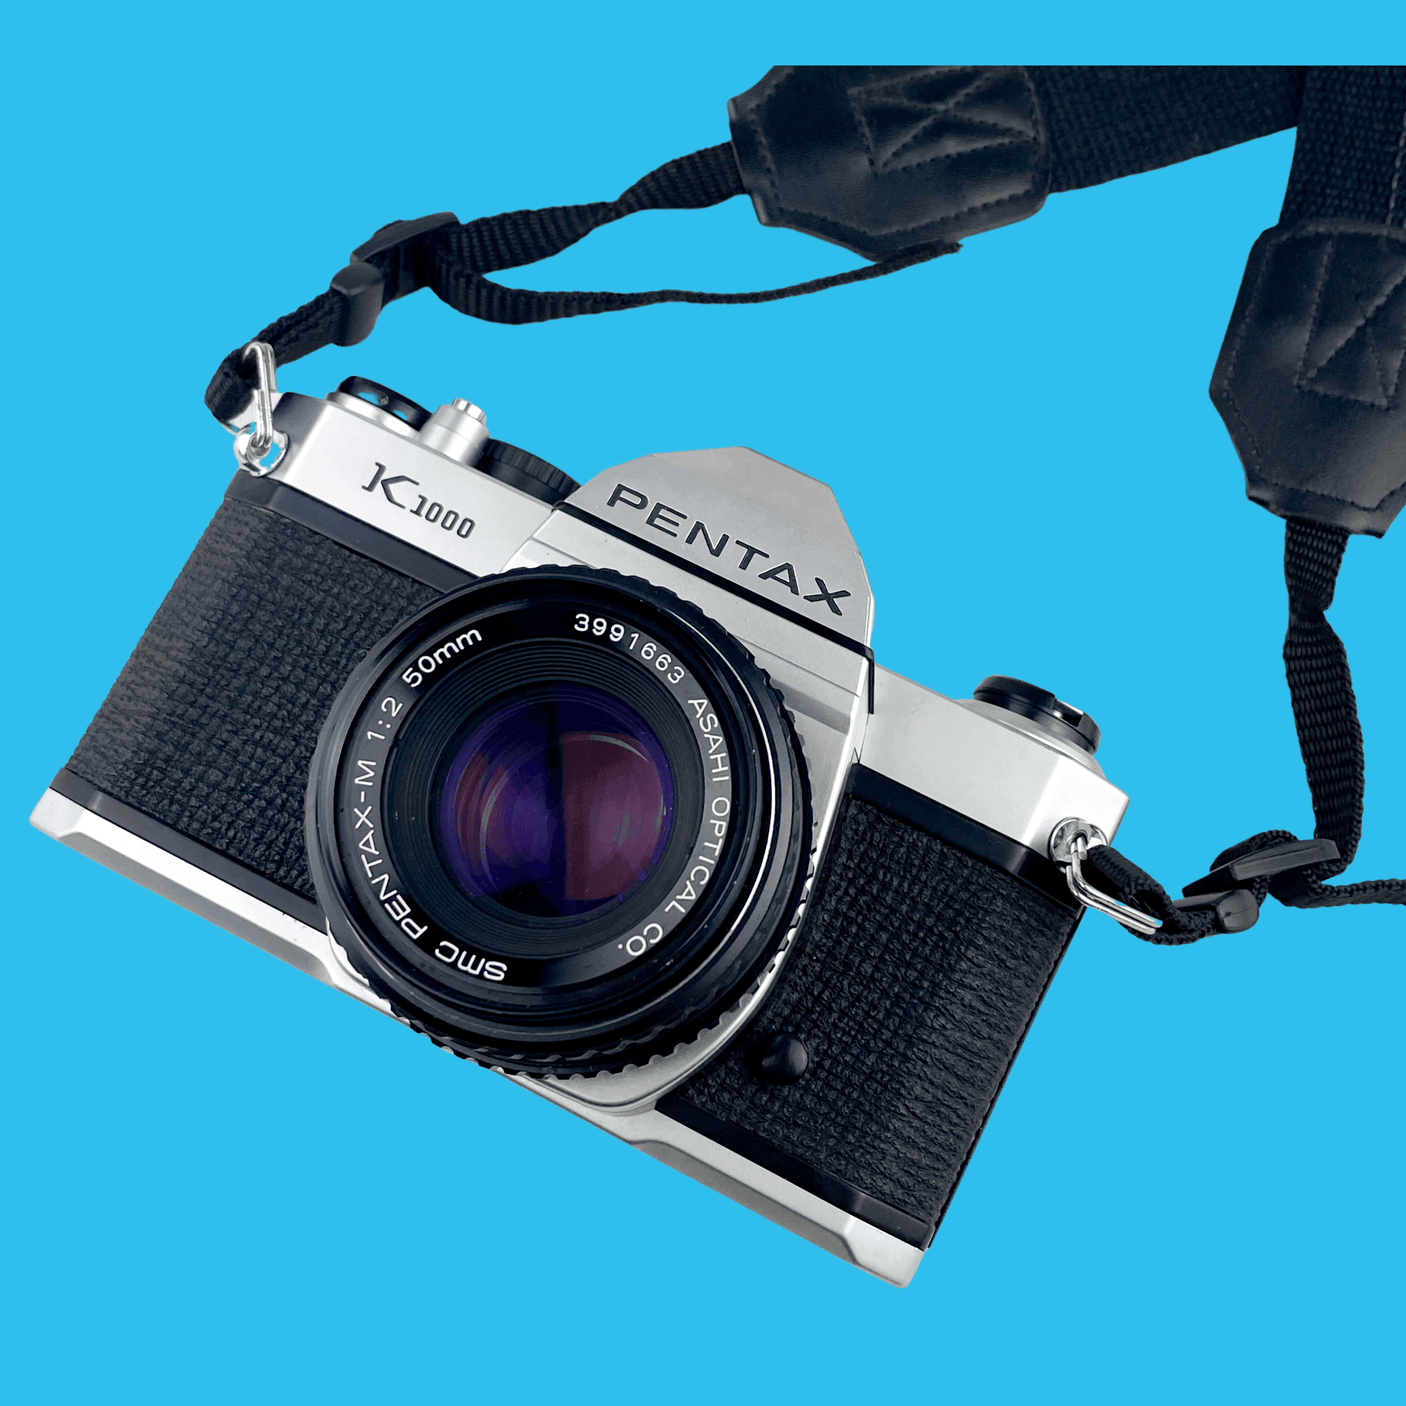 Pentax K1000 Vintage SLR 35mm Film Camera with Pentax f/2 50mm Prime Lens